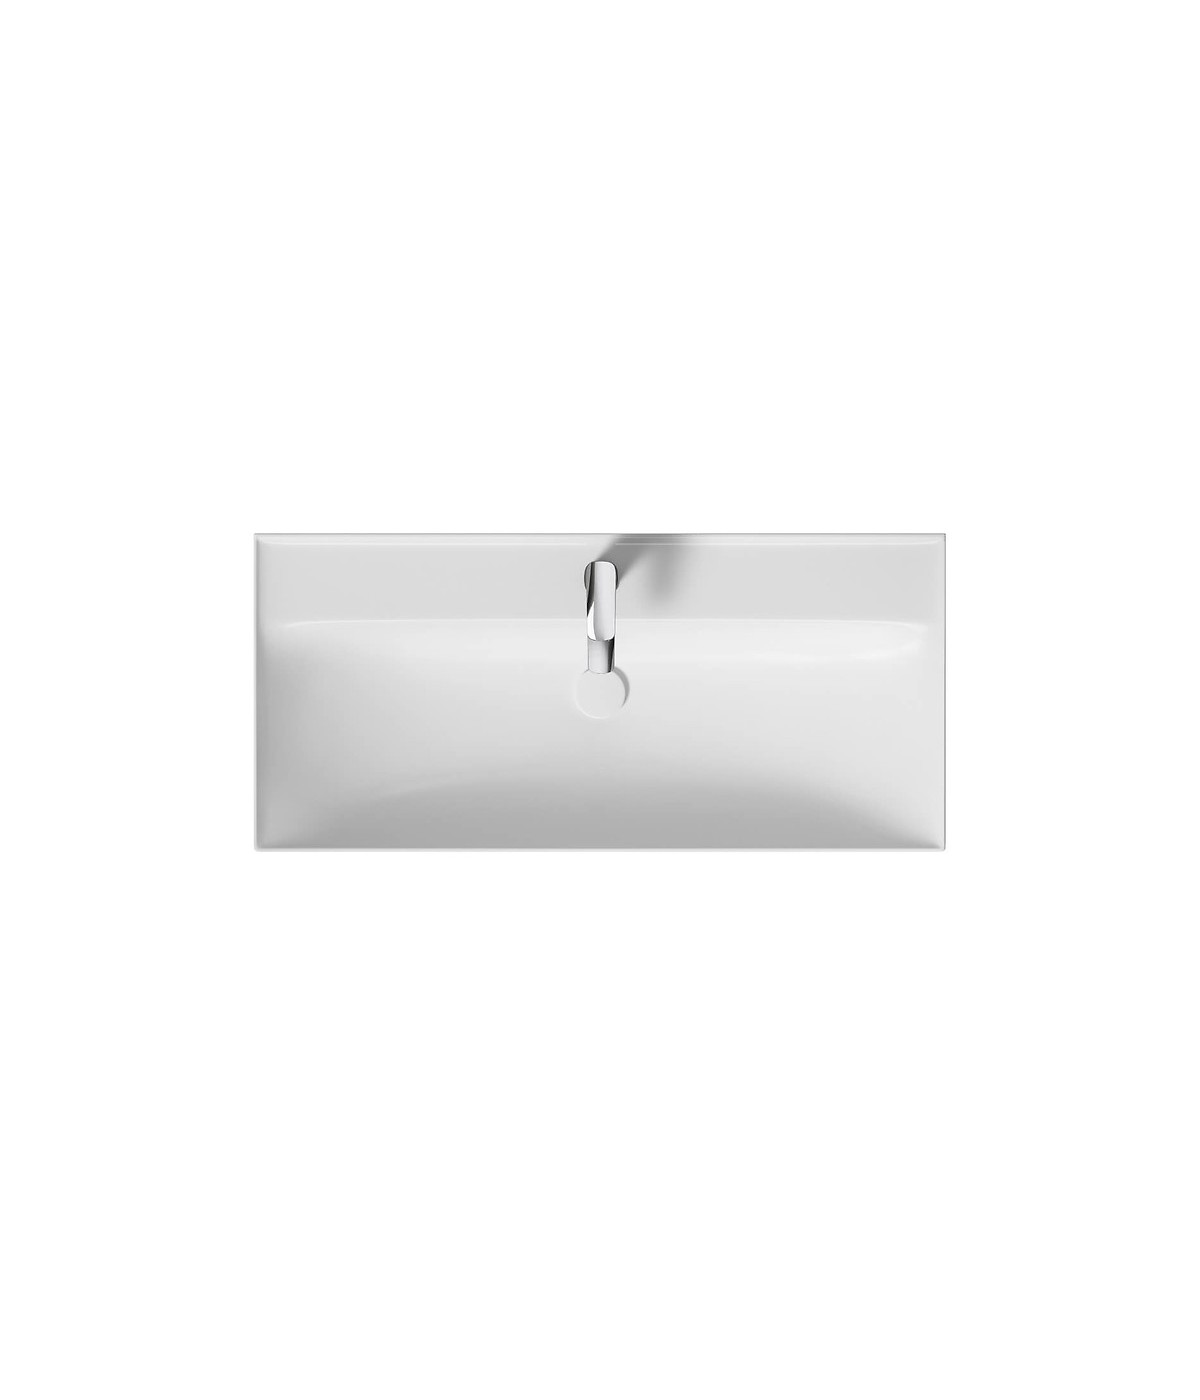 Badmöbel Set LARGA 100 Waschbecken-Unterschrank, Hochschrank 160 mit Spiegel Weiß, Silber Möbelgriffe